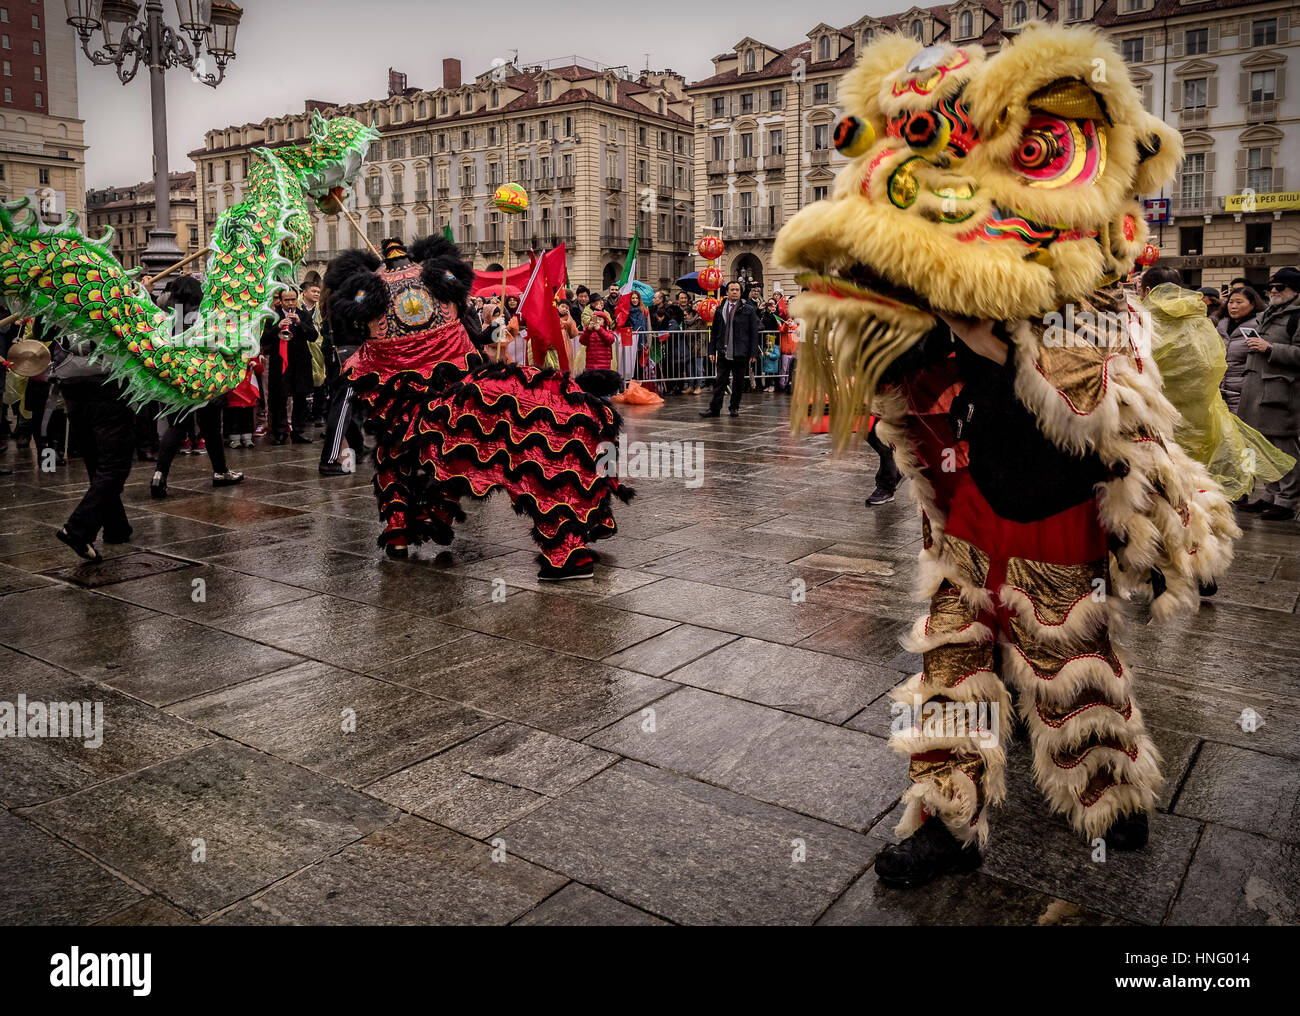 Turin, Italien. 12. Februar 2017. Feiern für das chinesische Neujahr, auch bekannt als die Lunar New Year oder Frühlingsfest und Drachentanz - 2017 Jahr des Hahnes - Löwen tanzen Credit: wirklich Easy Star/Alamy Live News Stockfoto